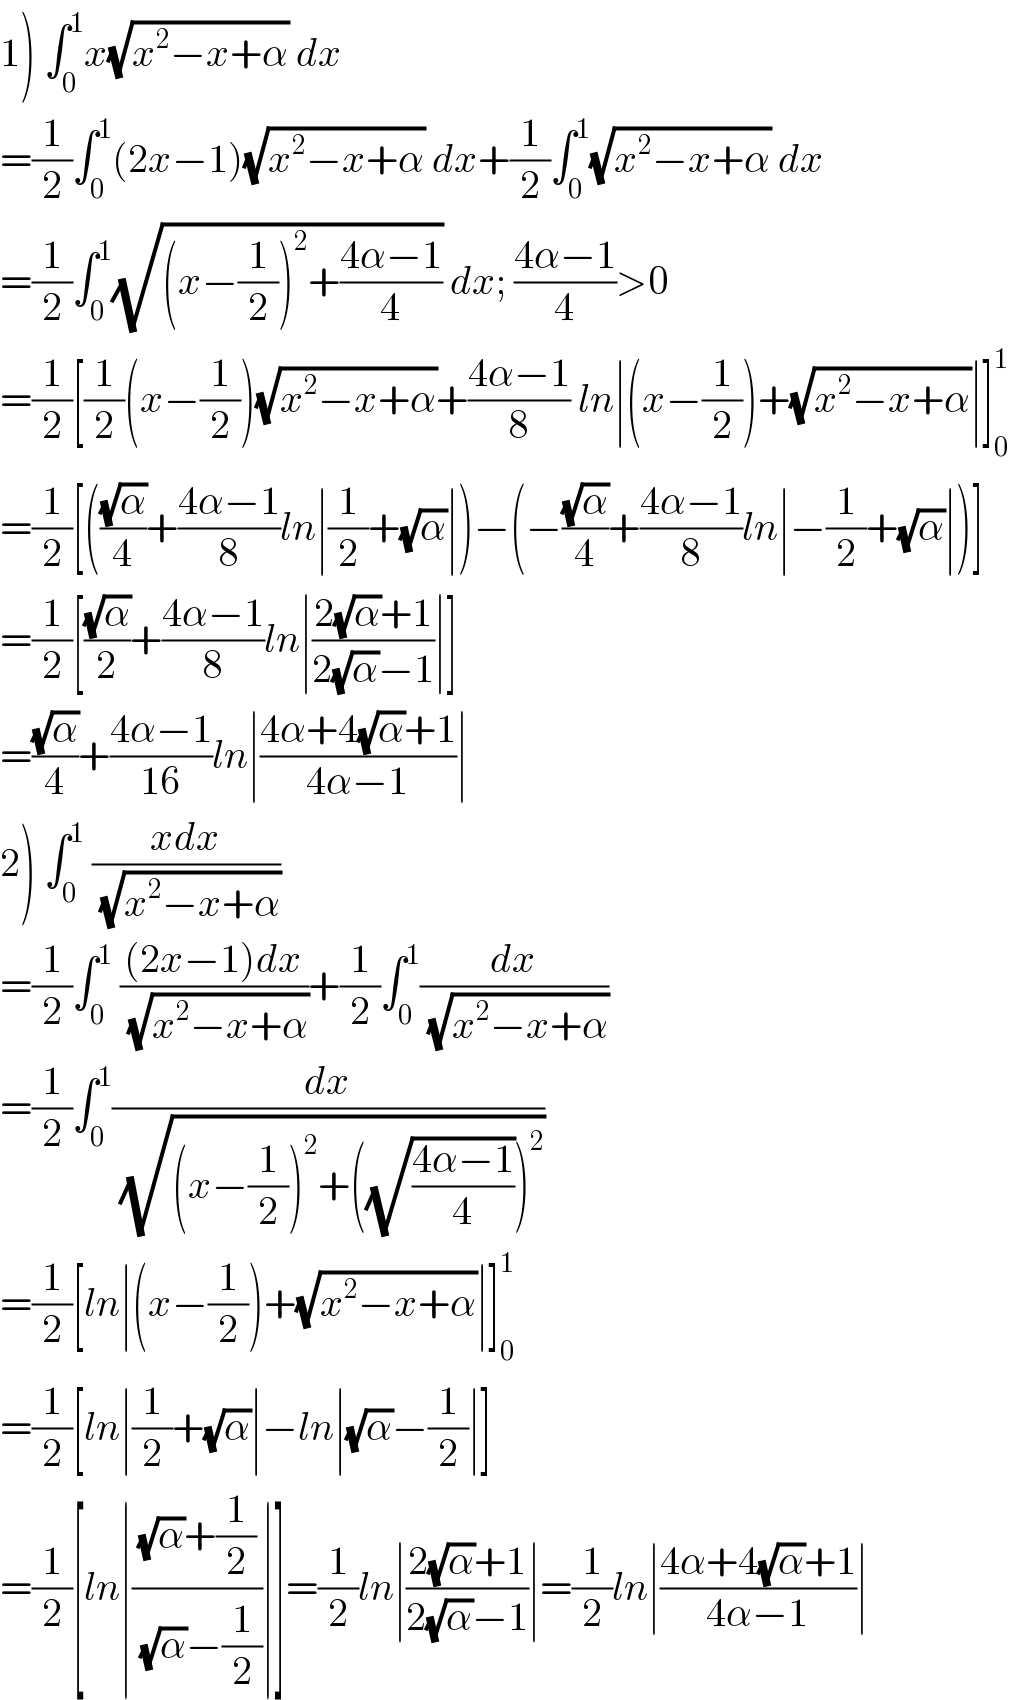 1) ∫_0 ^1 x(√(x^2 −x+α)) dx  =(1/2)∫_0 ^1 (2x−1)(√(x^2 −x+α)) dx+(1/2)∫_0 ^1 (√(x^2 −x+α)) dx  =(1/2)∫_0 ^1 (√((x−(1/2))^2 +((4α−1)/4))) dx; ((4α−1)/4)>0  =(1/2)[(1/2)(x−(1/2))(√(x^2 −x+α))+((4α−1)/8) ln∣(x−(1/2))+(√(x^2 −x+α))∣]_0 ^1   =(1/2)[(((√α)/4)+((4α−1)/8)ln∣(1/2)+(√α)∣)−(−((√α)/4)+((4α−1)/8)ln∣−(1/2)+(√α)∣)]  =(1/2)[((√α)/2)+((4α−1)/8)ln∣((2(√α)+1)/(2(√α)−1))∣]  =((√α)/4)+((4α−1)/(16))ln∣((4α+4(√α)+1)/(4α−1))∣  2) ∫_0 ^1  ((xdx)/(√(x^2 −x+α)))  =(1/2)∫_0 ^1  (((2x−1)dx)/(√(x^2 −x+α)))+(1/2)∫_0 ^1 (dx/(√(x^2 −x+α)))  =(1/2)∫_0 ^1 (dx/(√((x−(1/2))^2 +((√((4α−1)/4)))^2 )))  =(1/2)[ln∣(x−(1/2))+(√(x^2 −x+α))∣]_0 ^1   =(1/2)[ln∣(1/2)+(√α)∣−ln∣(√α)−(1/2)∣]  =(1/2)[ln∣(((√α)+(1/2))/((√α)−(1/2)))∣]=(1/2)ln∣((2(√α)+1)/(2(√α)−1))∣=(1/2)ln∣((4α+4(√α)+1)/(4α−1))∣  